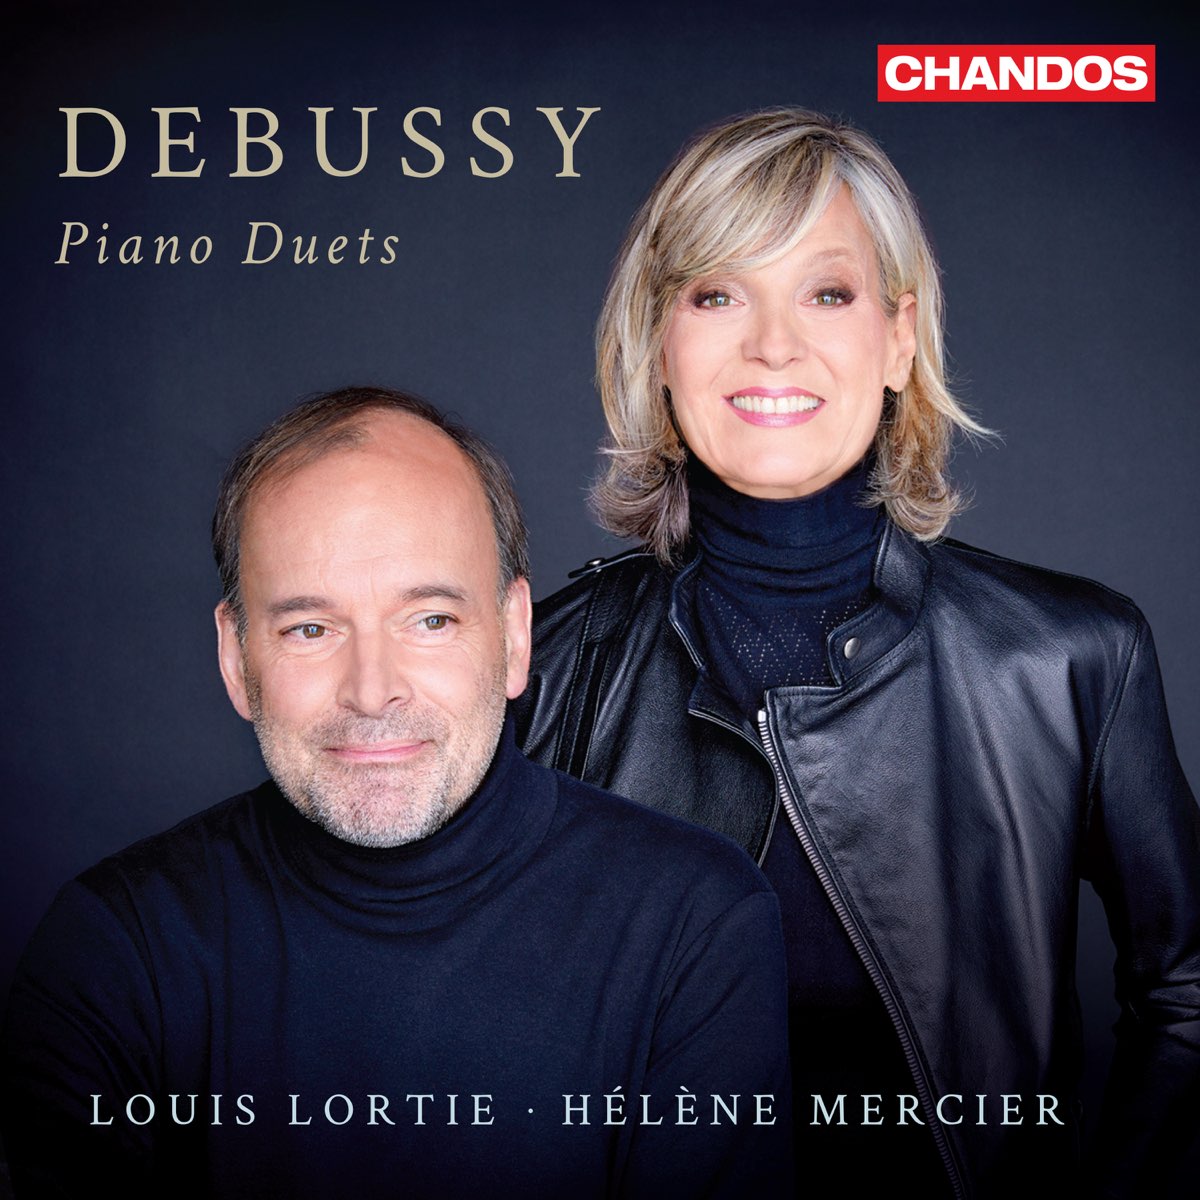 ‎Debussy: Piano Duets by Louis Lortie & Helene Mercier on Apple Music